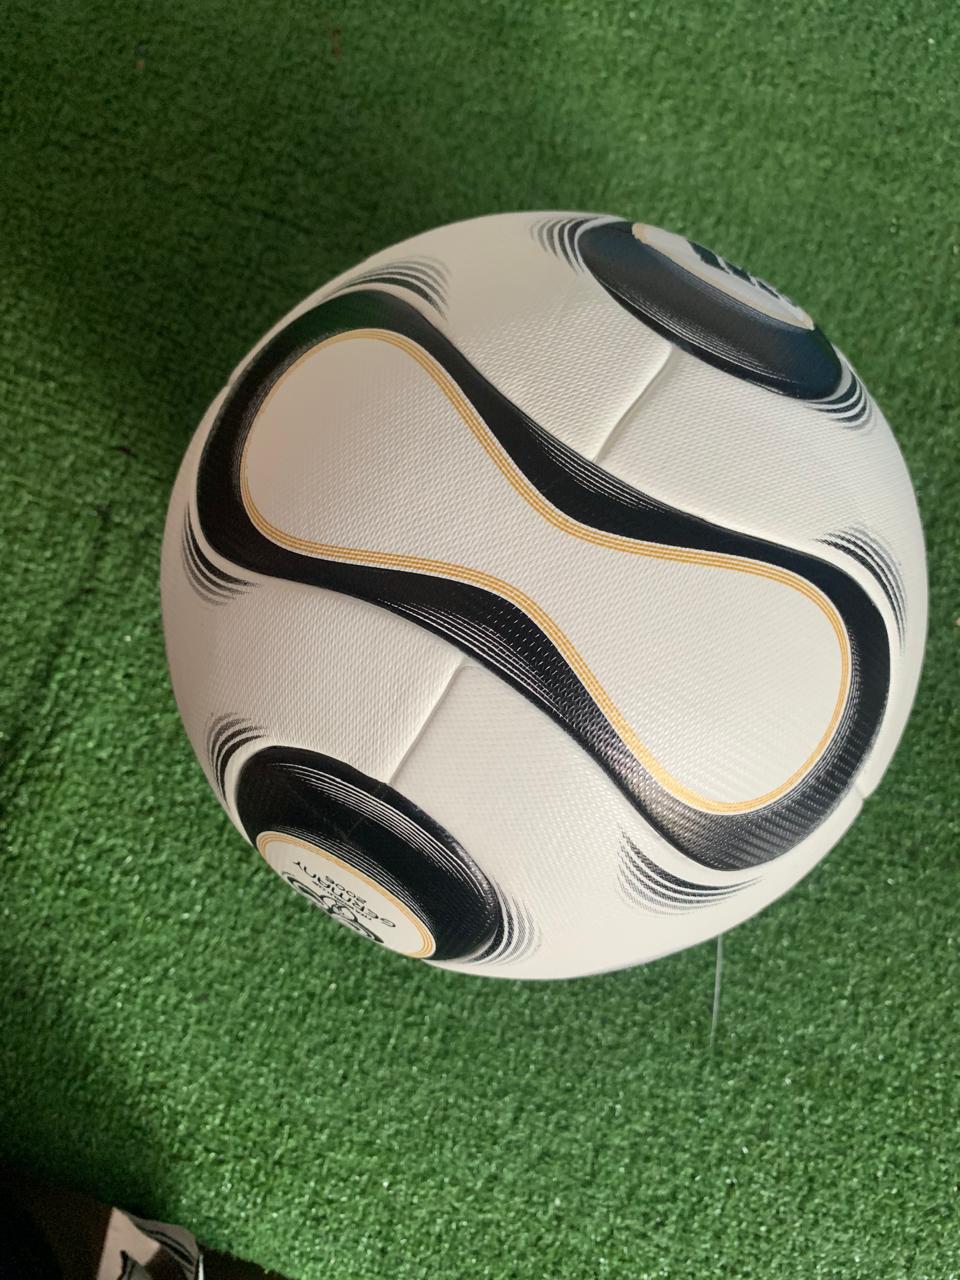 Balón Alemania 2006